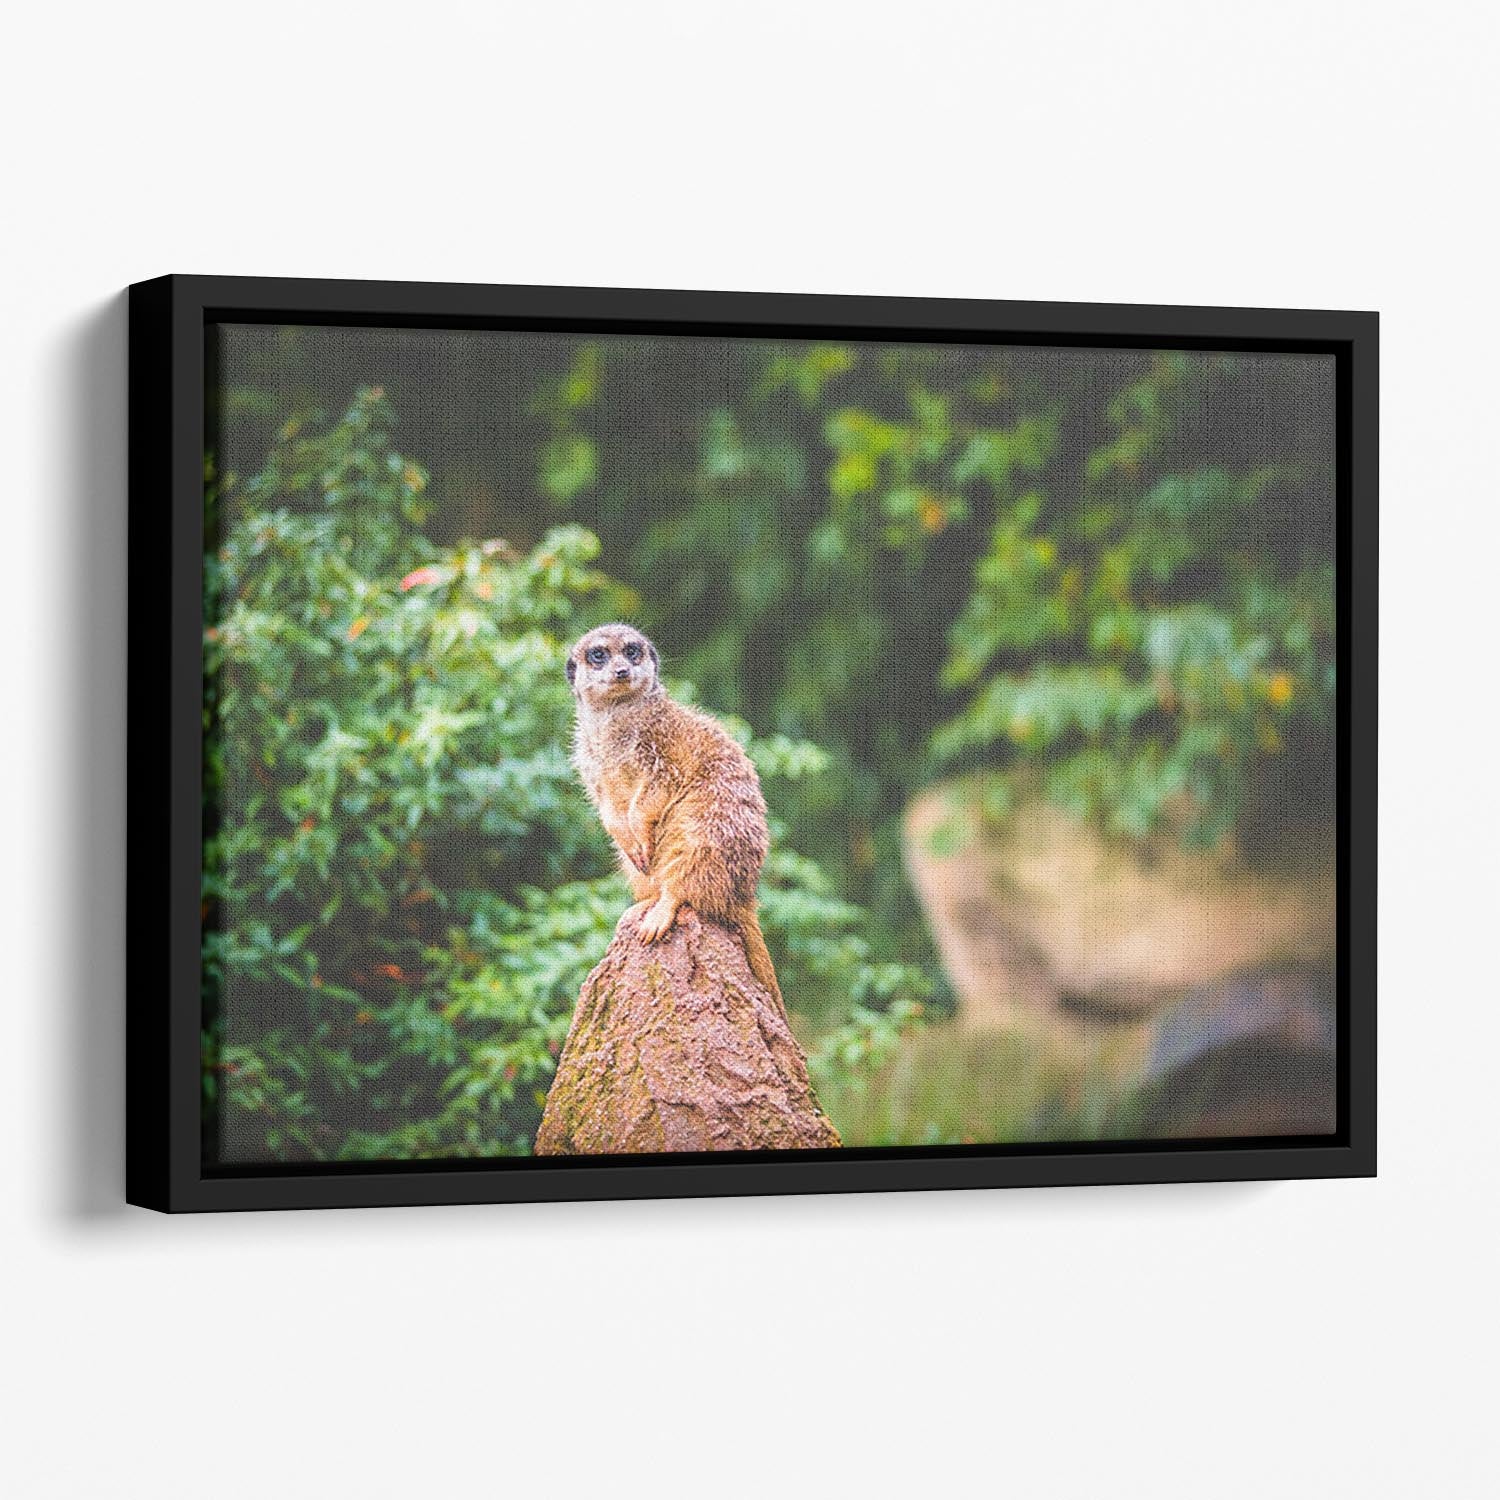 A Meerkats full attention Floating Framed Canvas - Canvas Art Rocks - 1